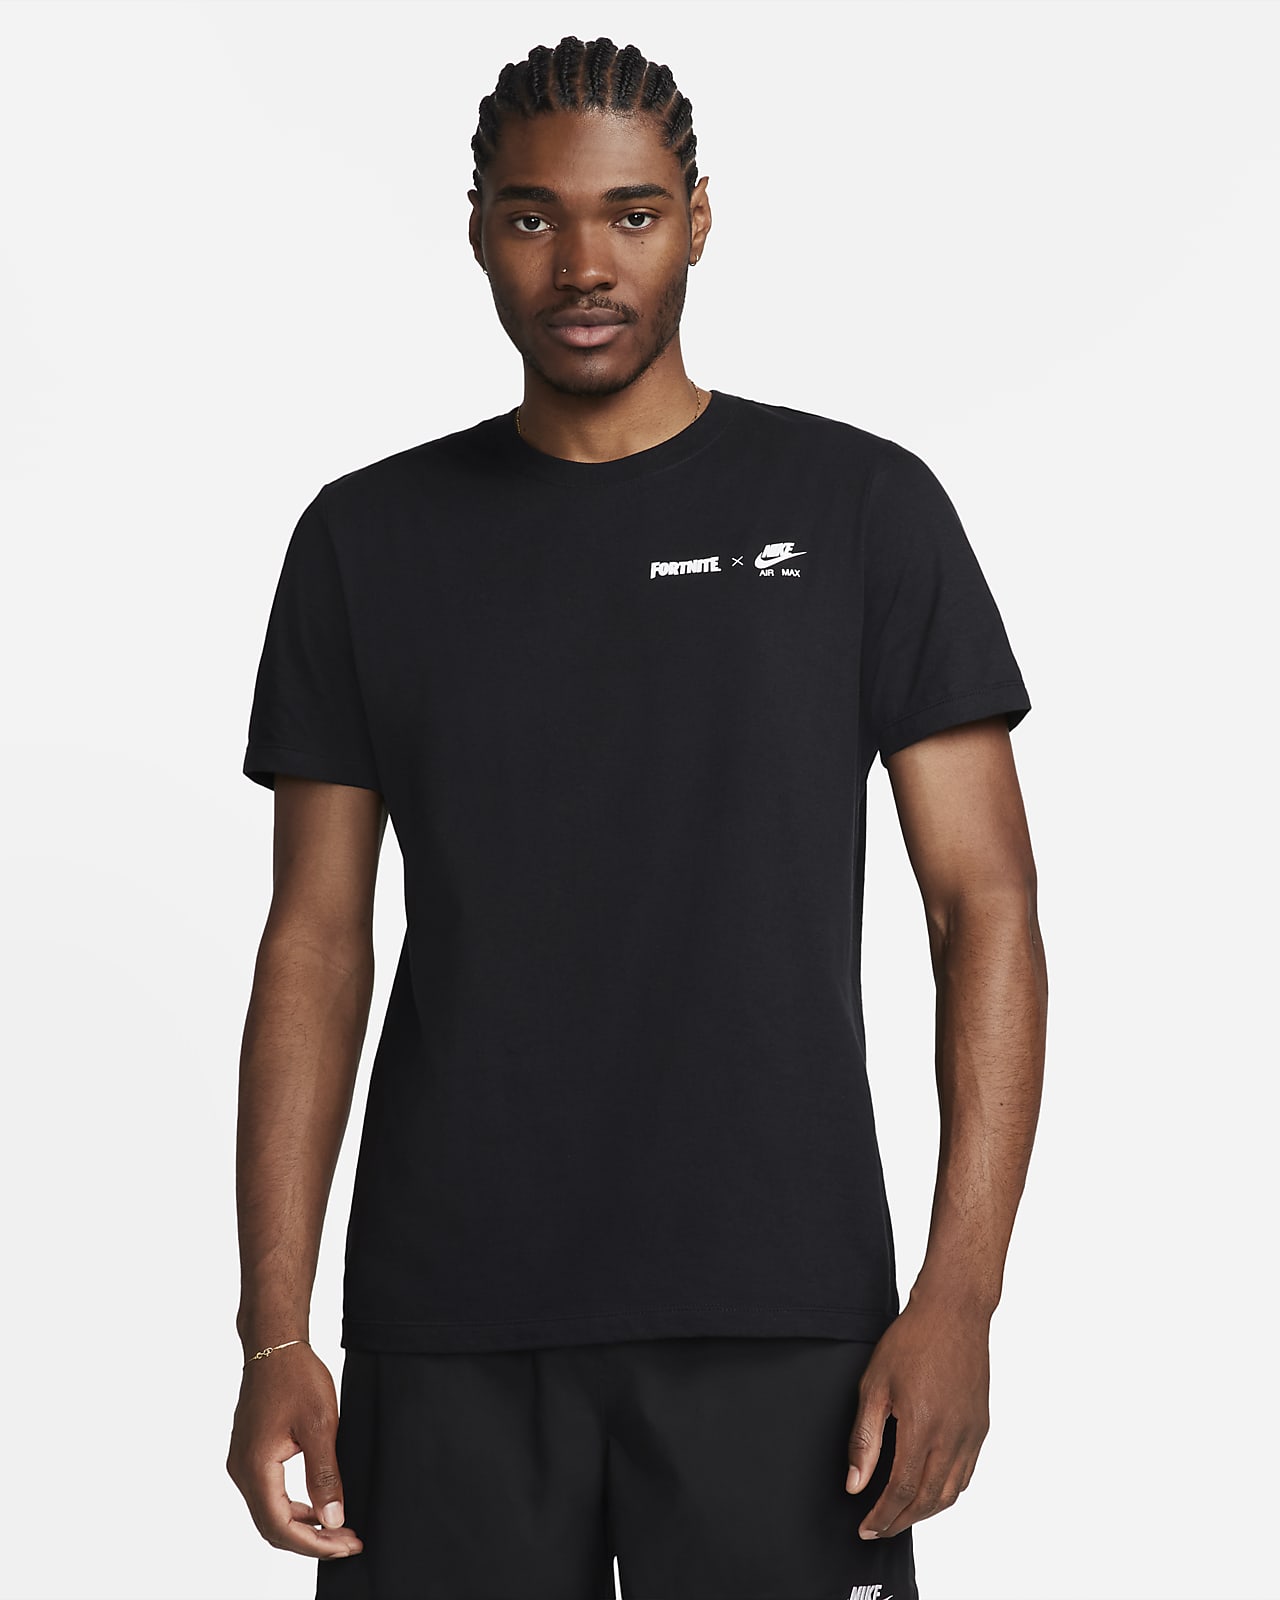 Fortnite™ x Nike Air Max Men's T-Shirt. Nike.com